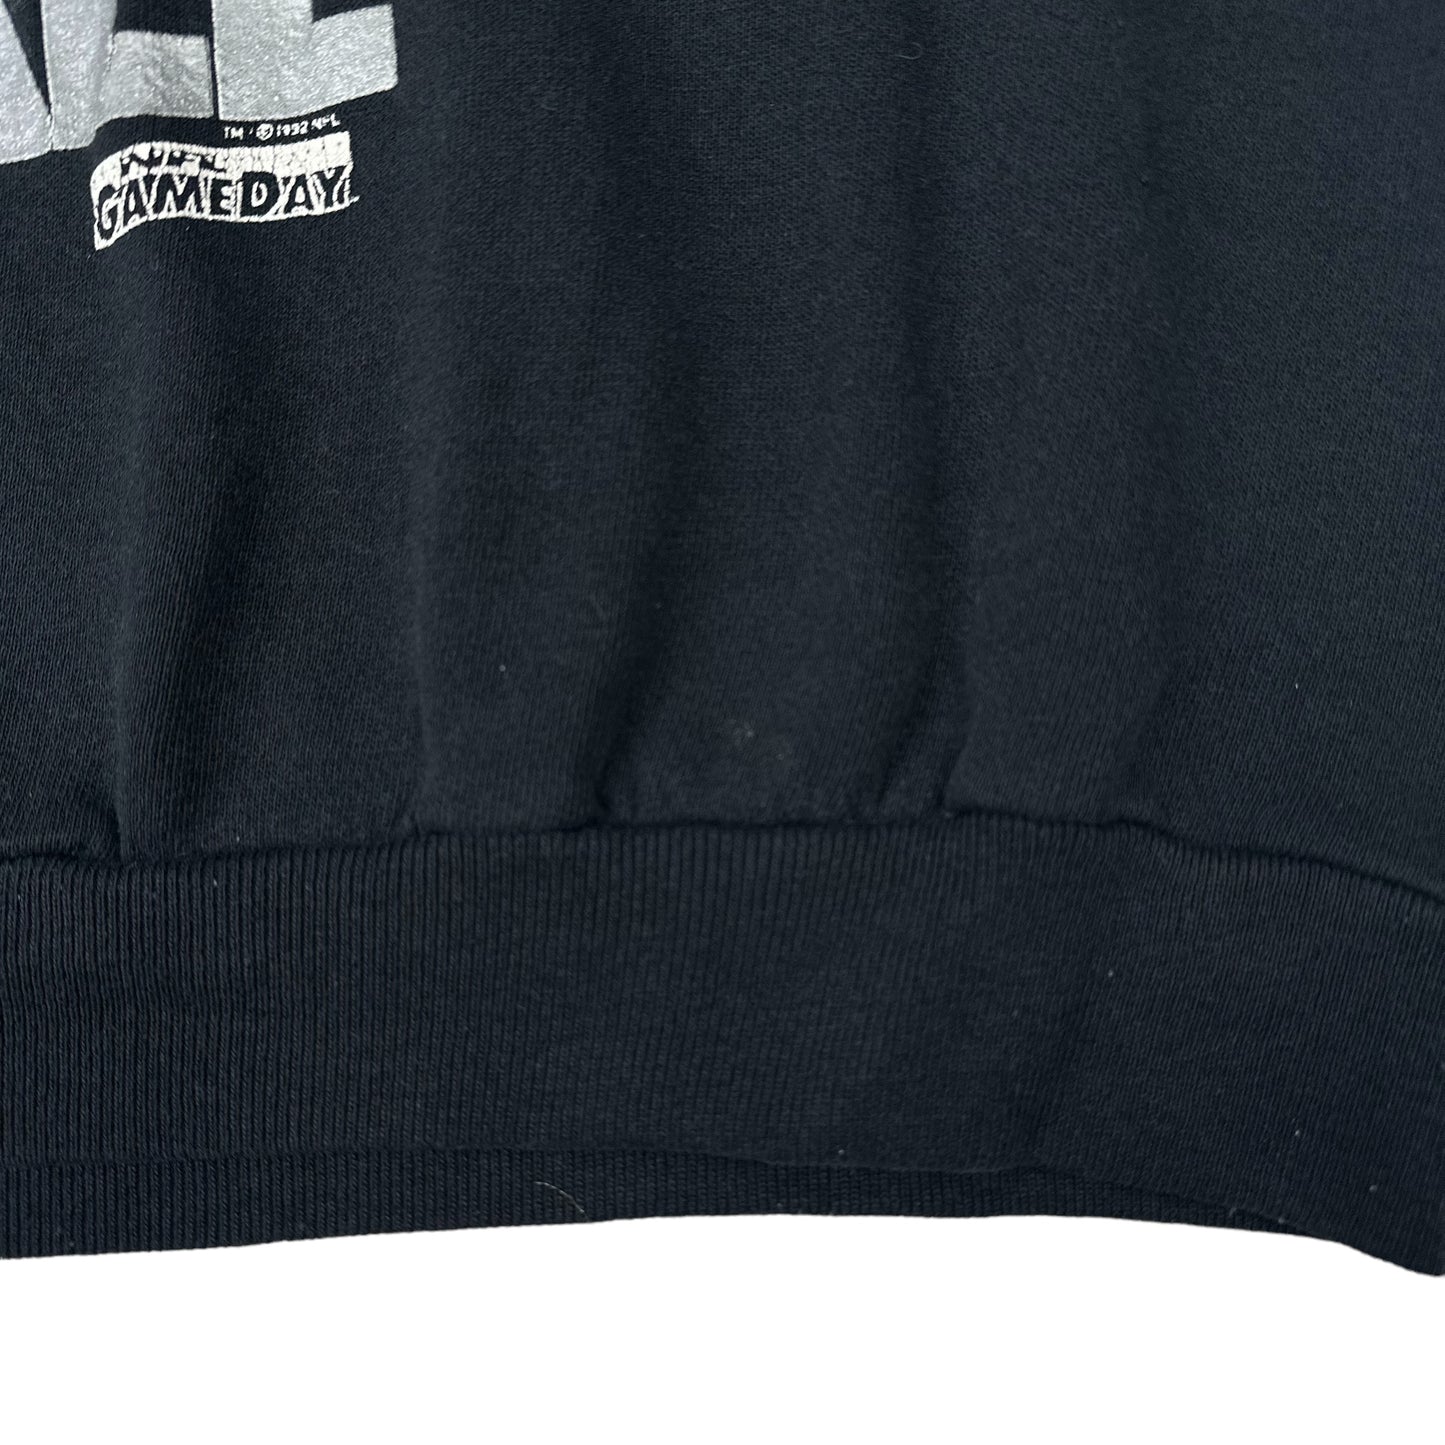 Vintage Los Angeles Raiders Football Black Sweatshirt